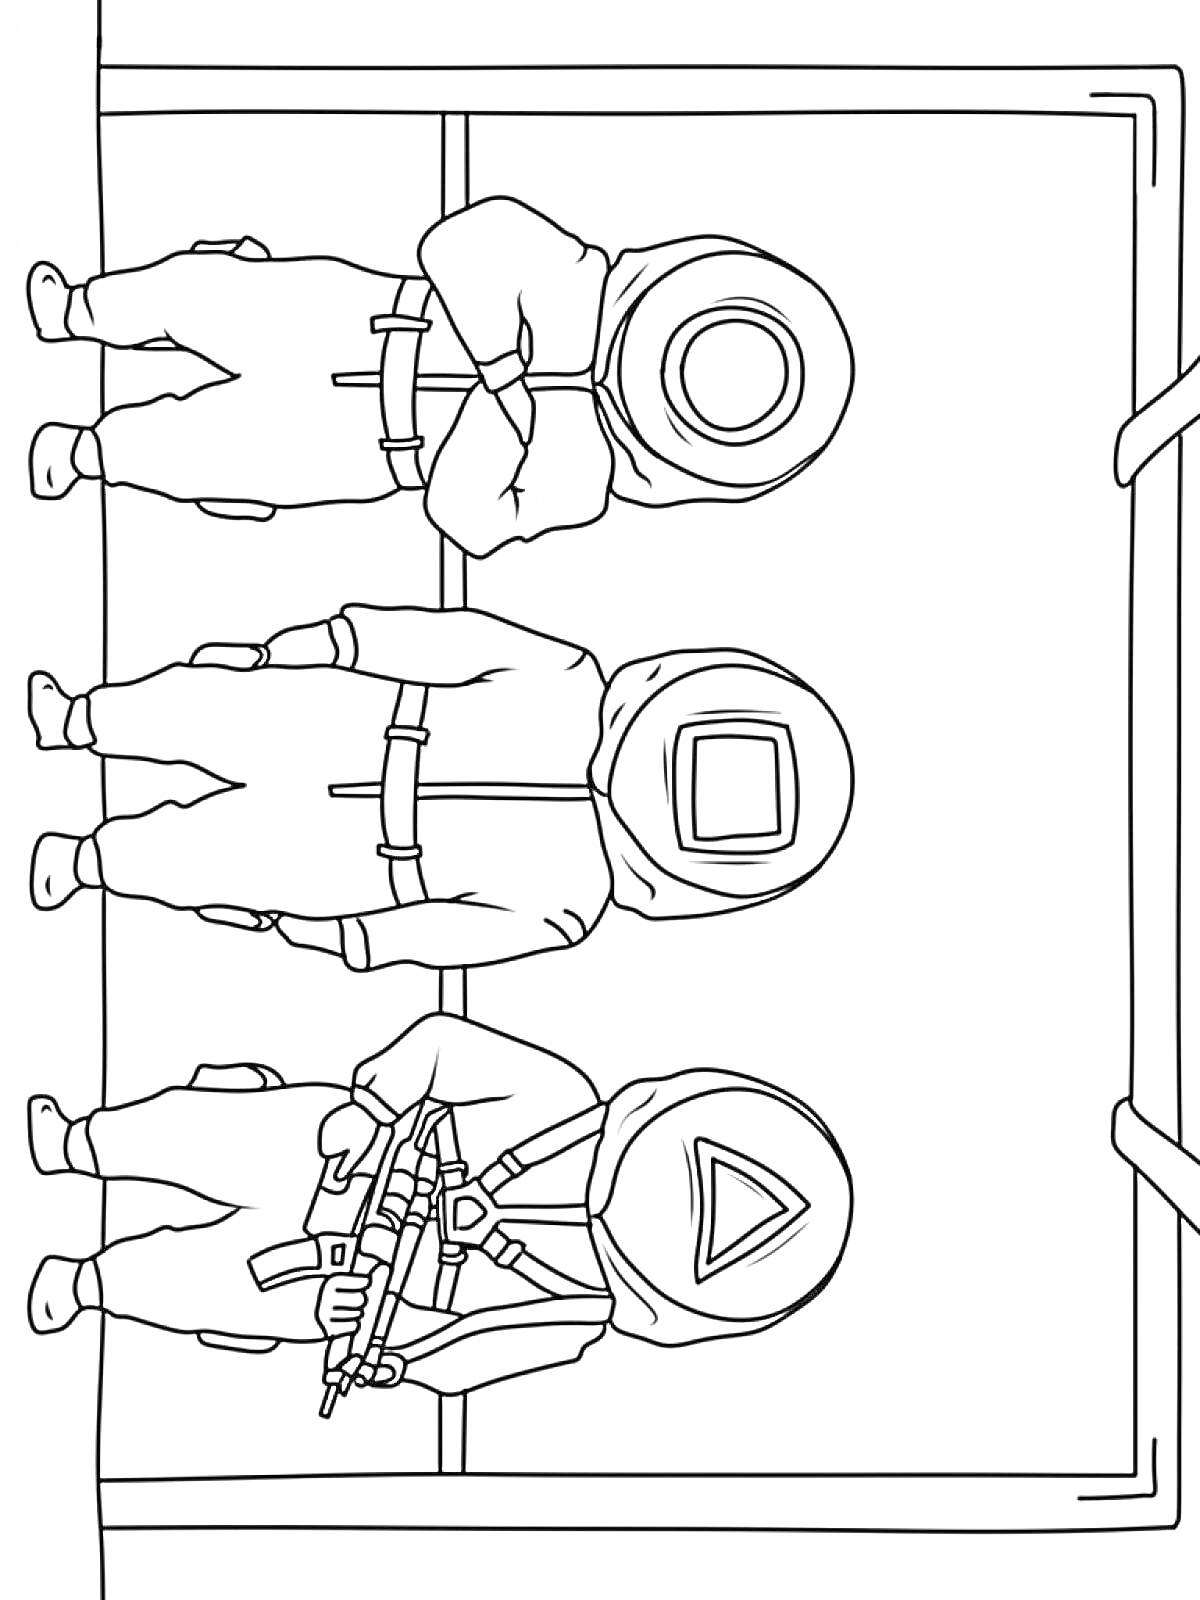 Охранники с кругом, квадратом и треугольником на масках, стоящие в ряд в дверном проеме